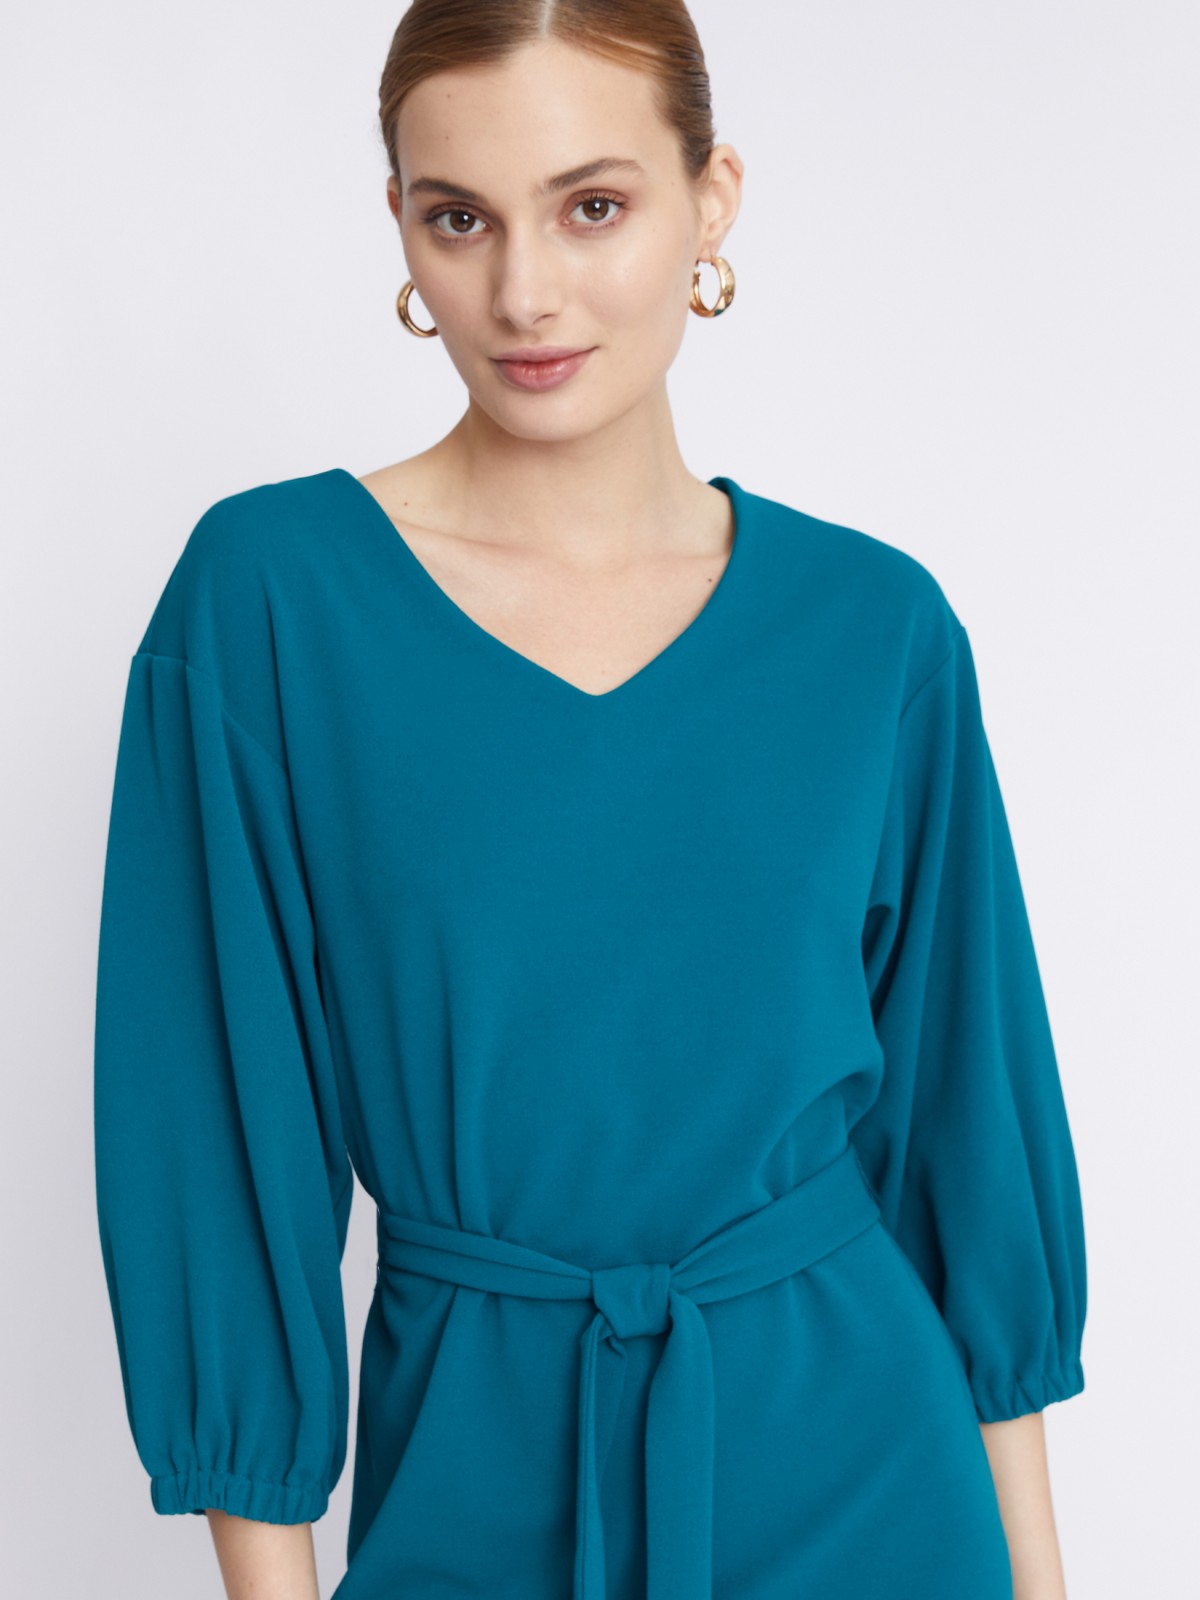 Платье с объёмными рукавами и поясом zolla 22331819F062, цвет темно-бирюзовый, размер S - фото 3